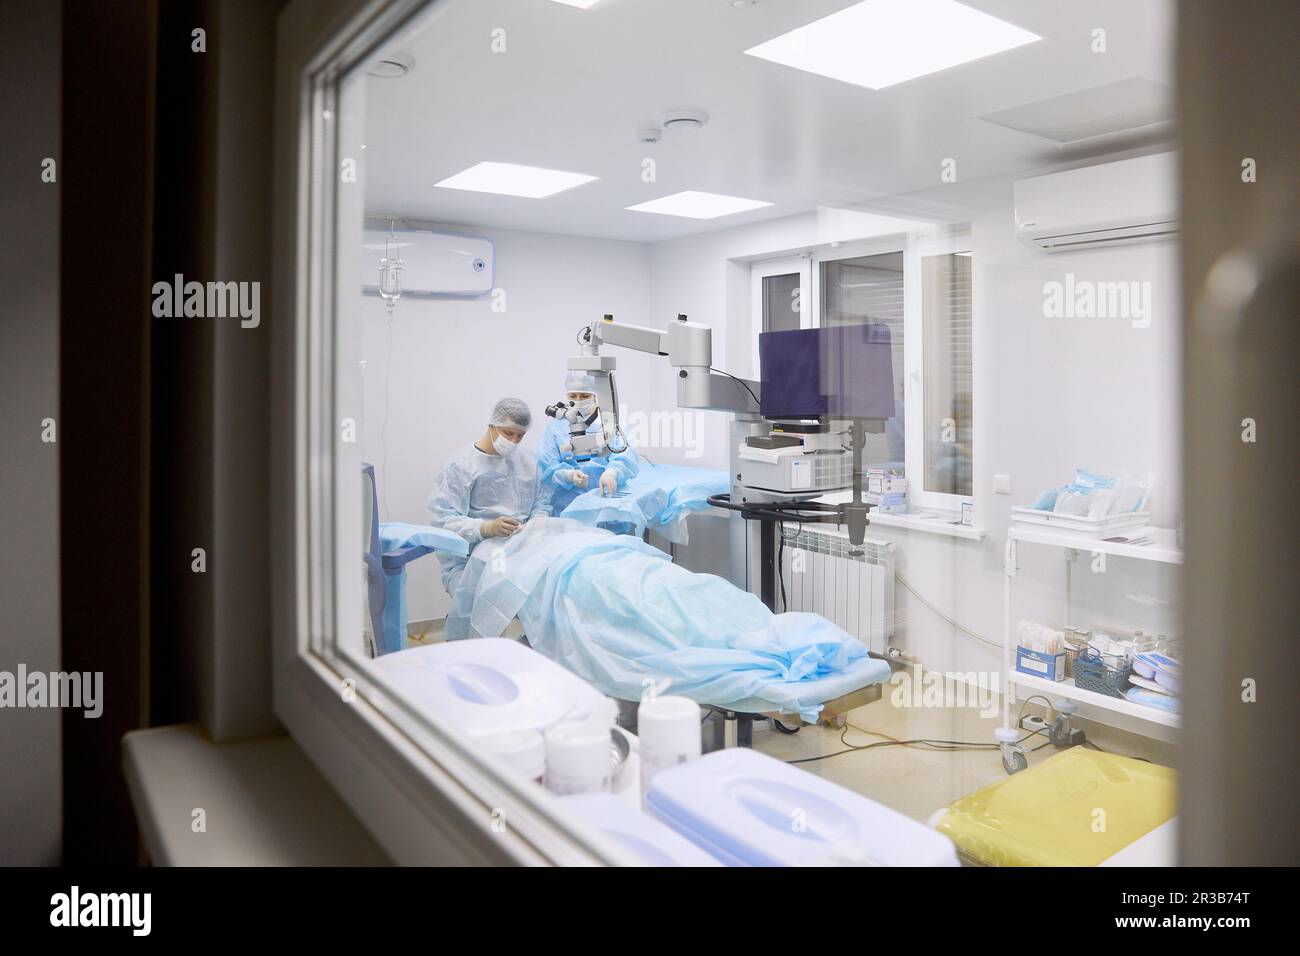 Medico che esegue la chirurgia oculare in sala operatoria visto attraverso la finestra di vetro Foto Stock